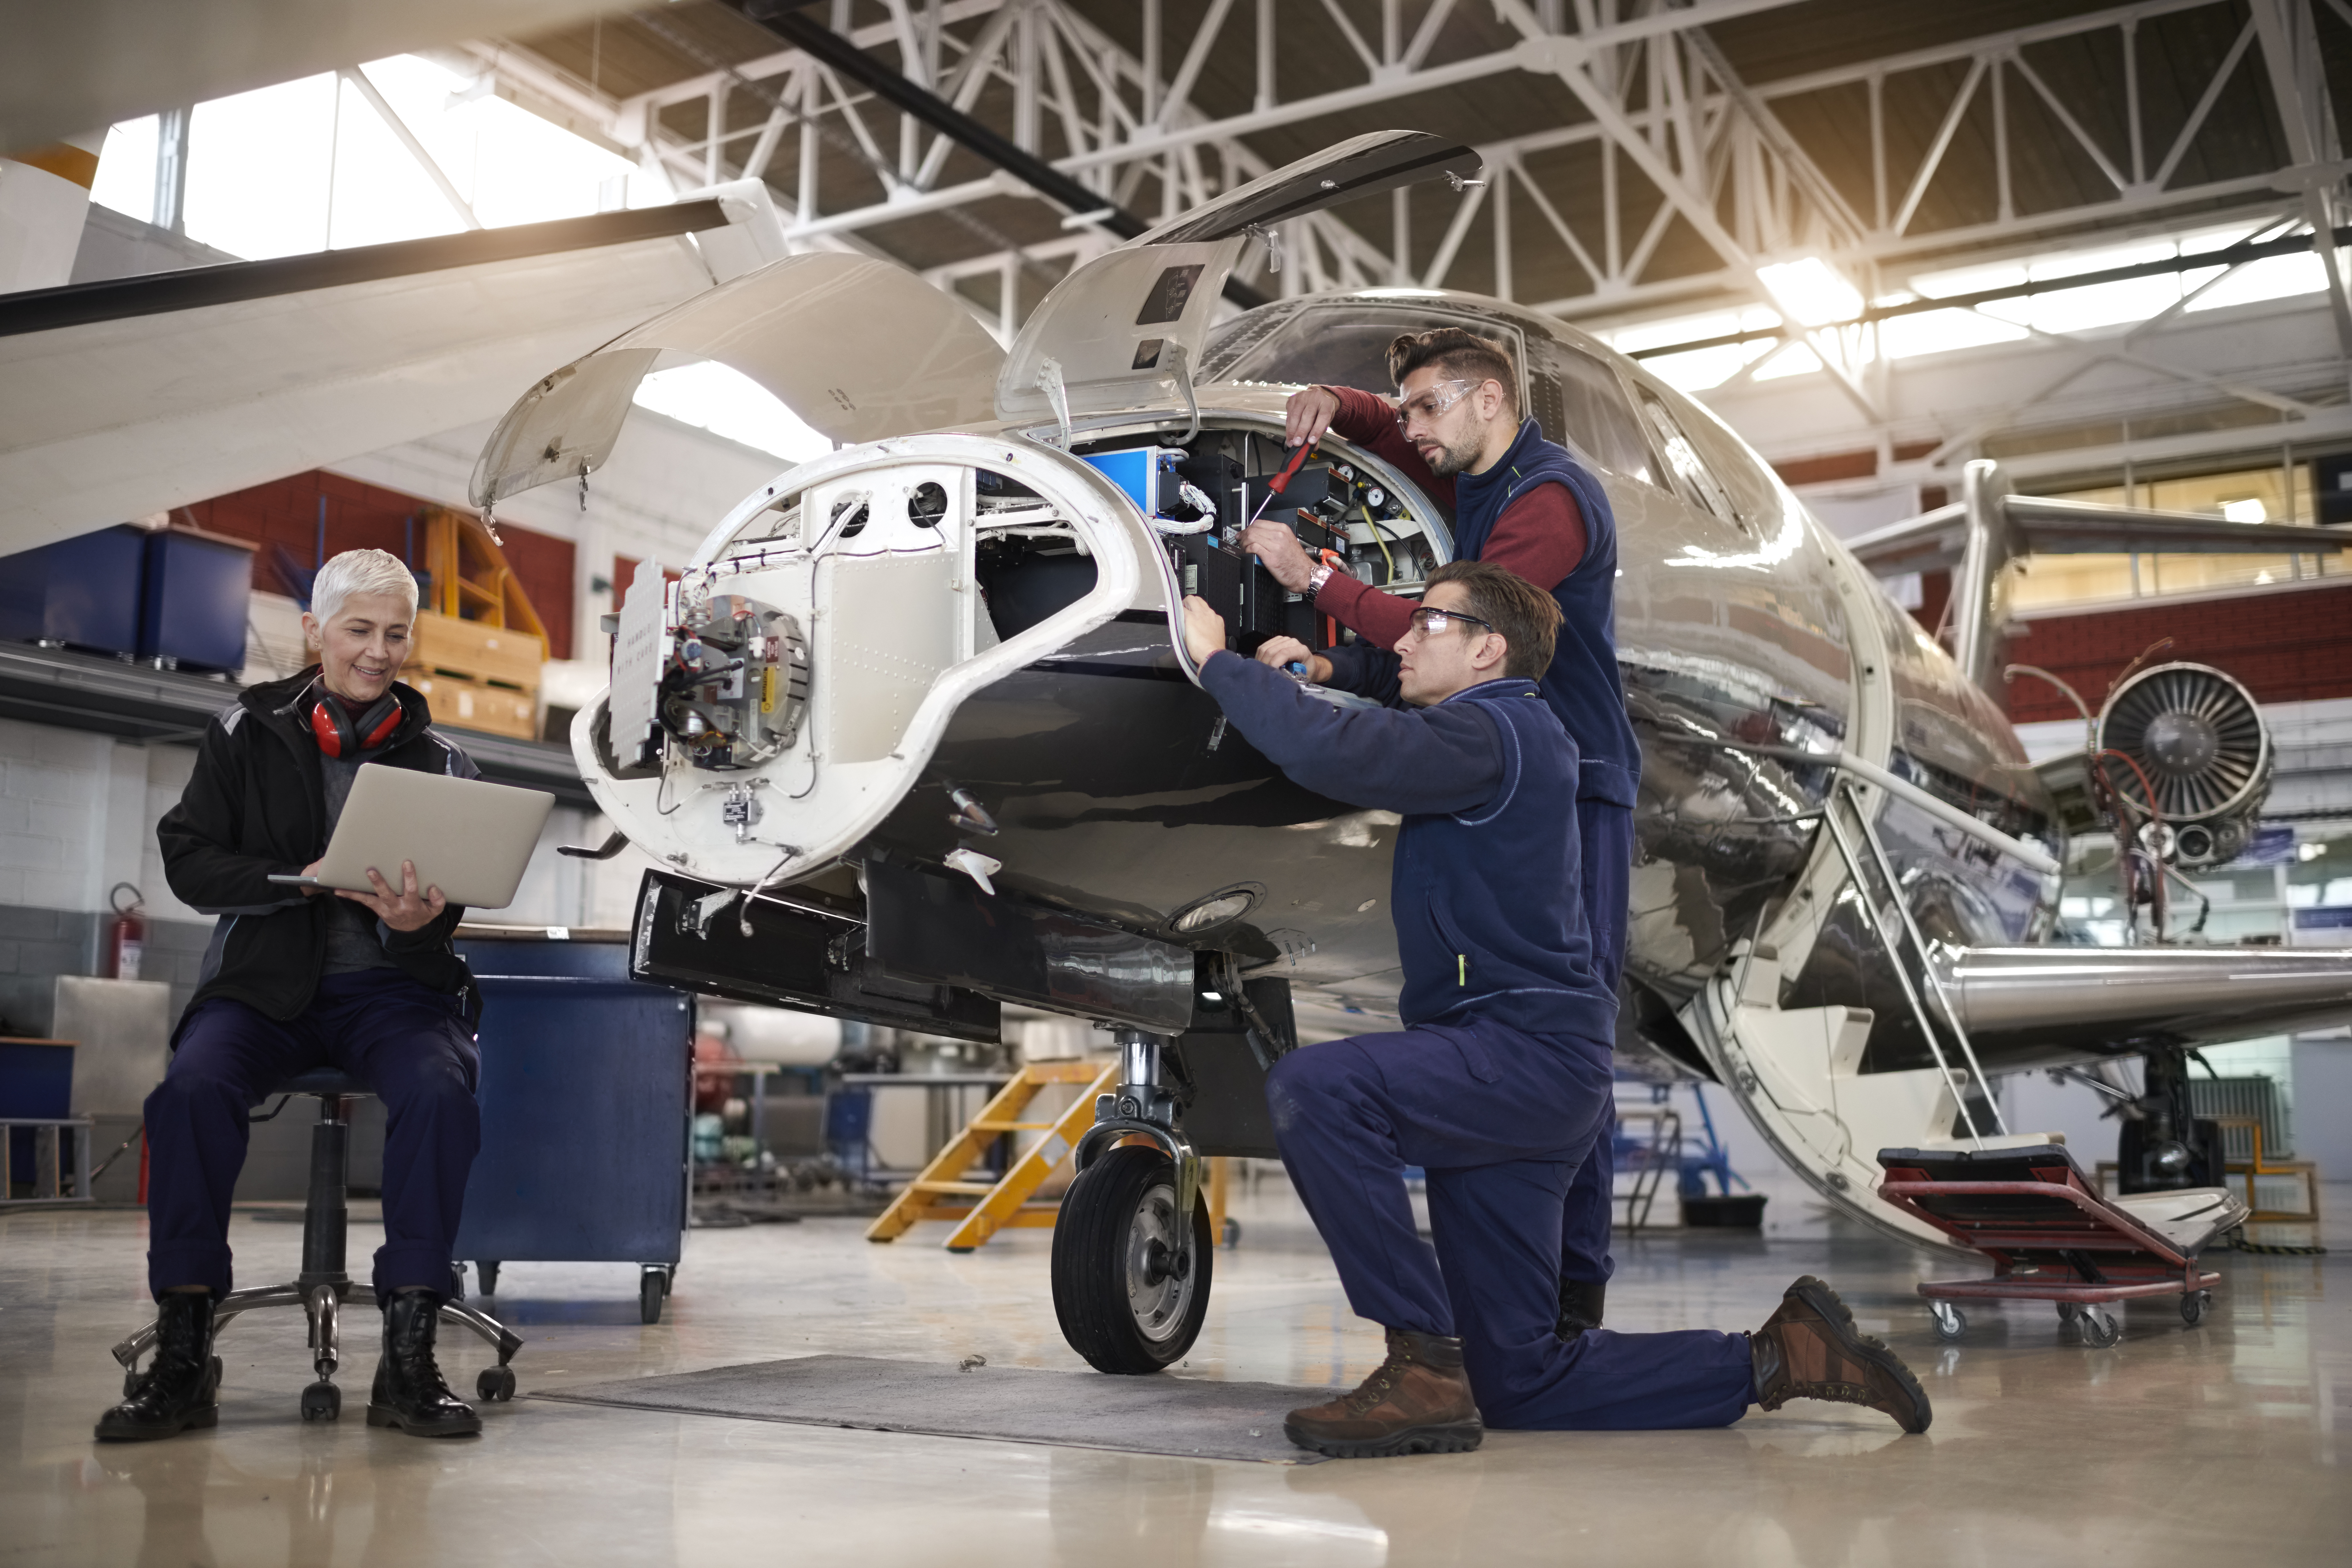 Aircraft mechanics in the hangar